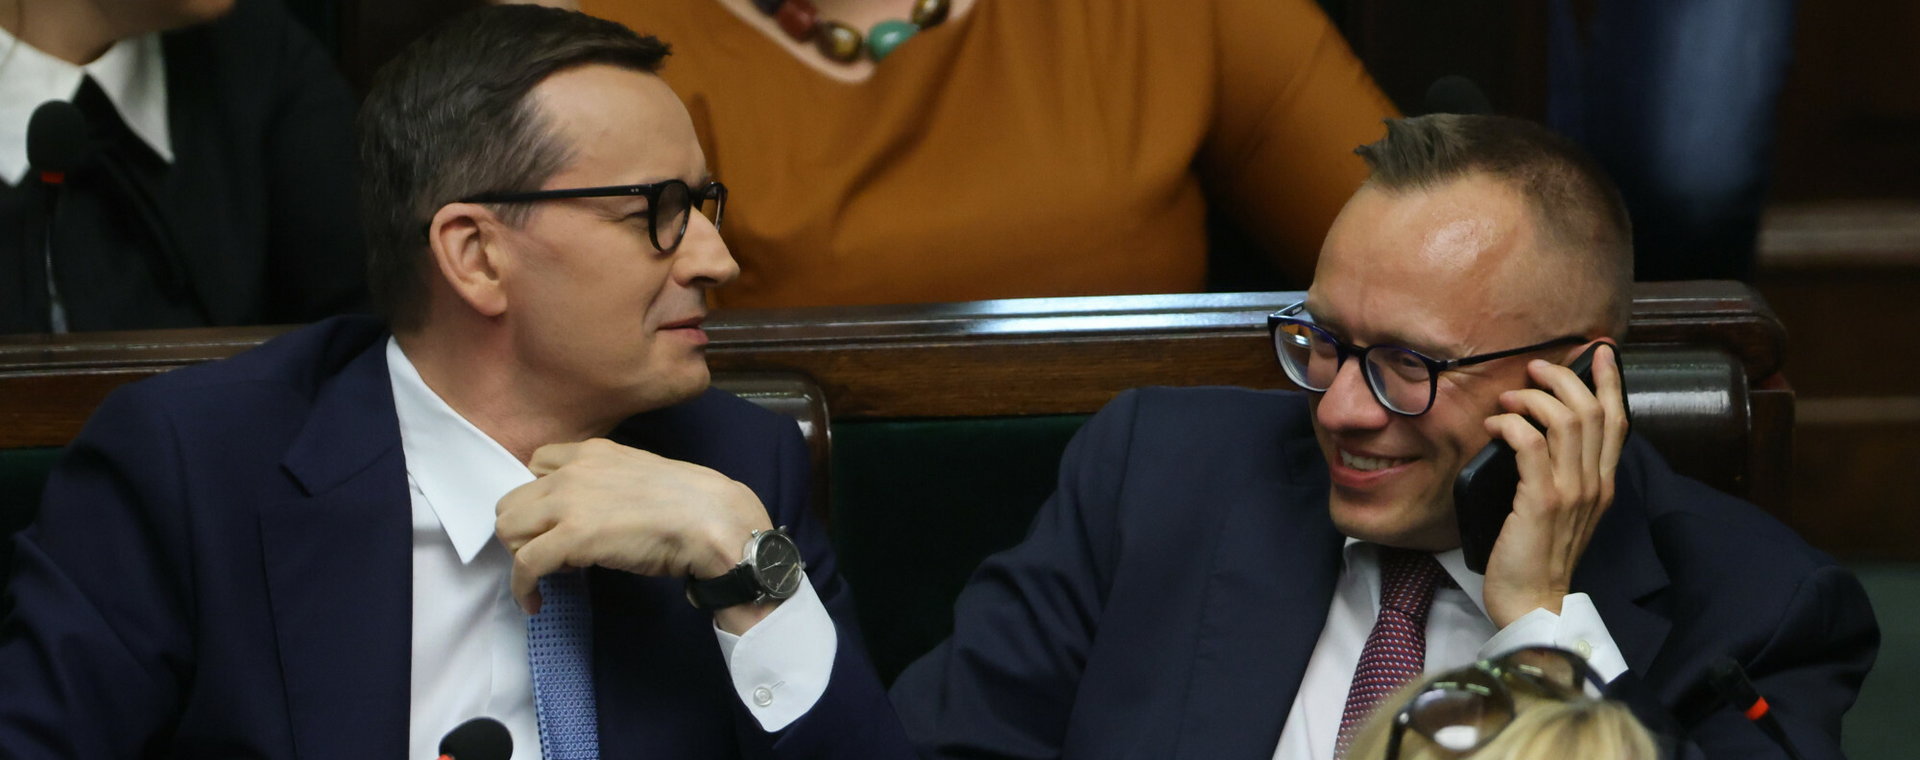 Premier Mateusz Morawiecki i wiceminister finansów Artur Soboń w ławach poselskich w Sejmie